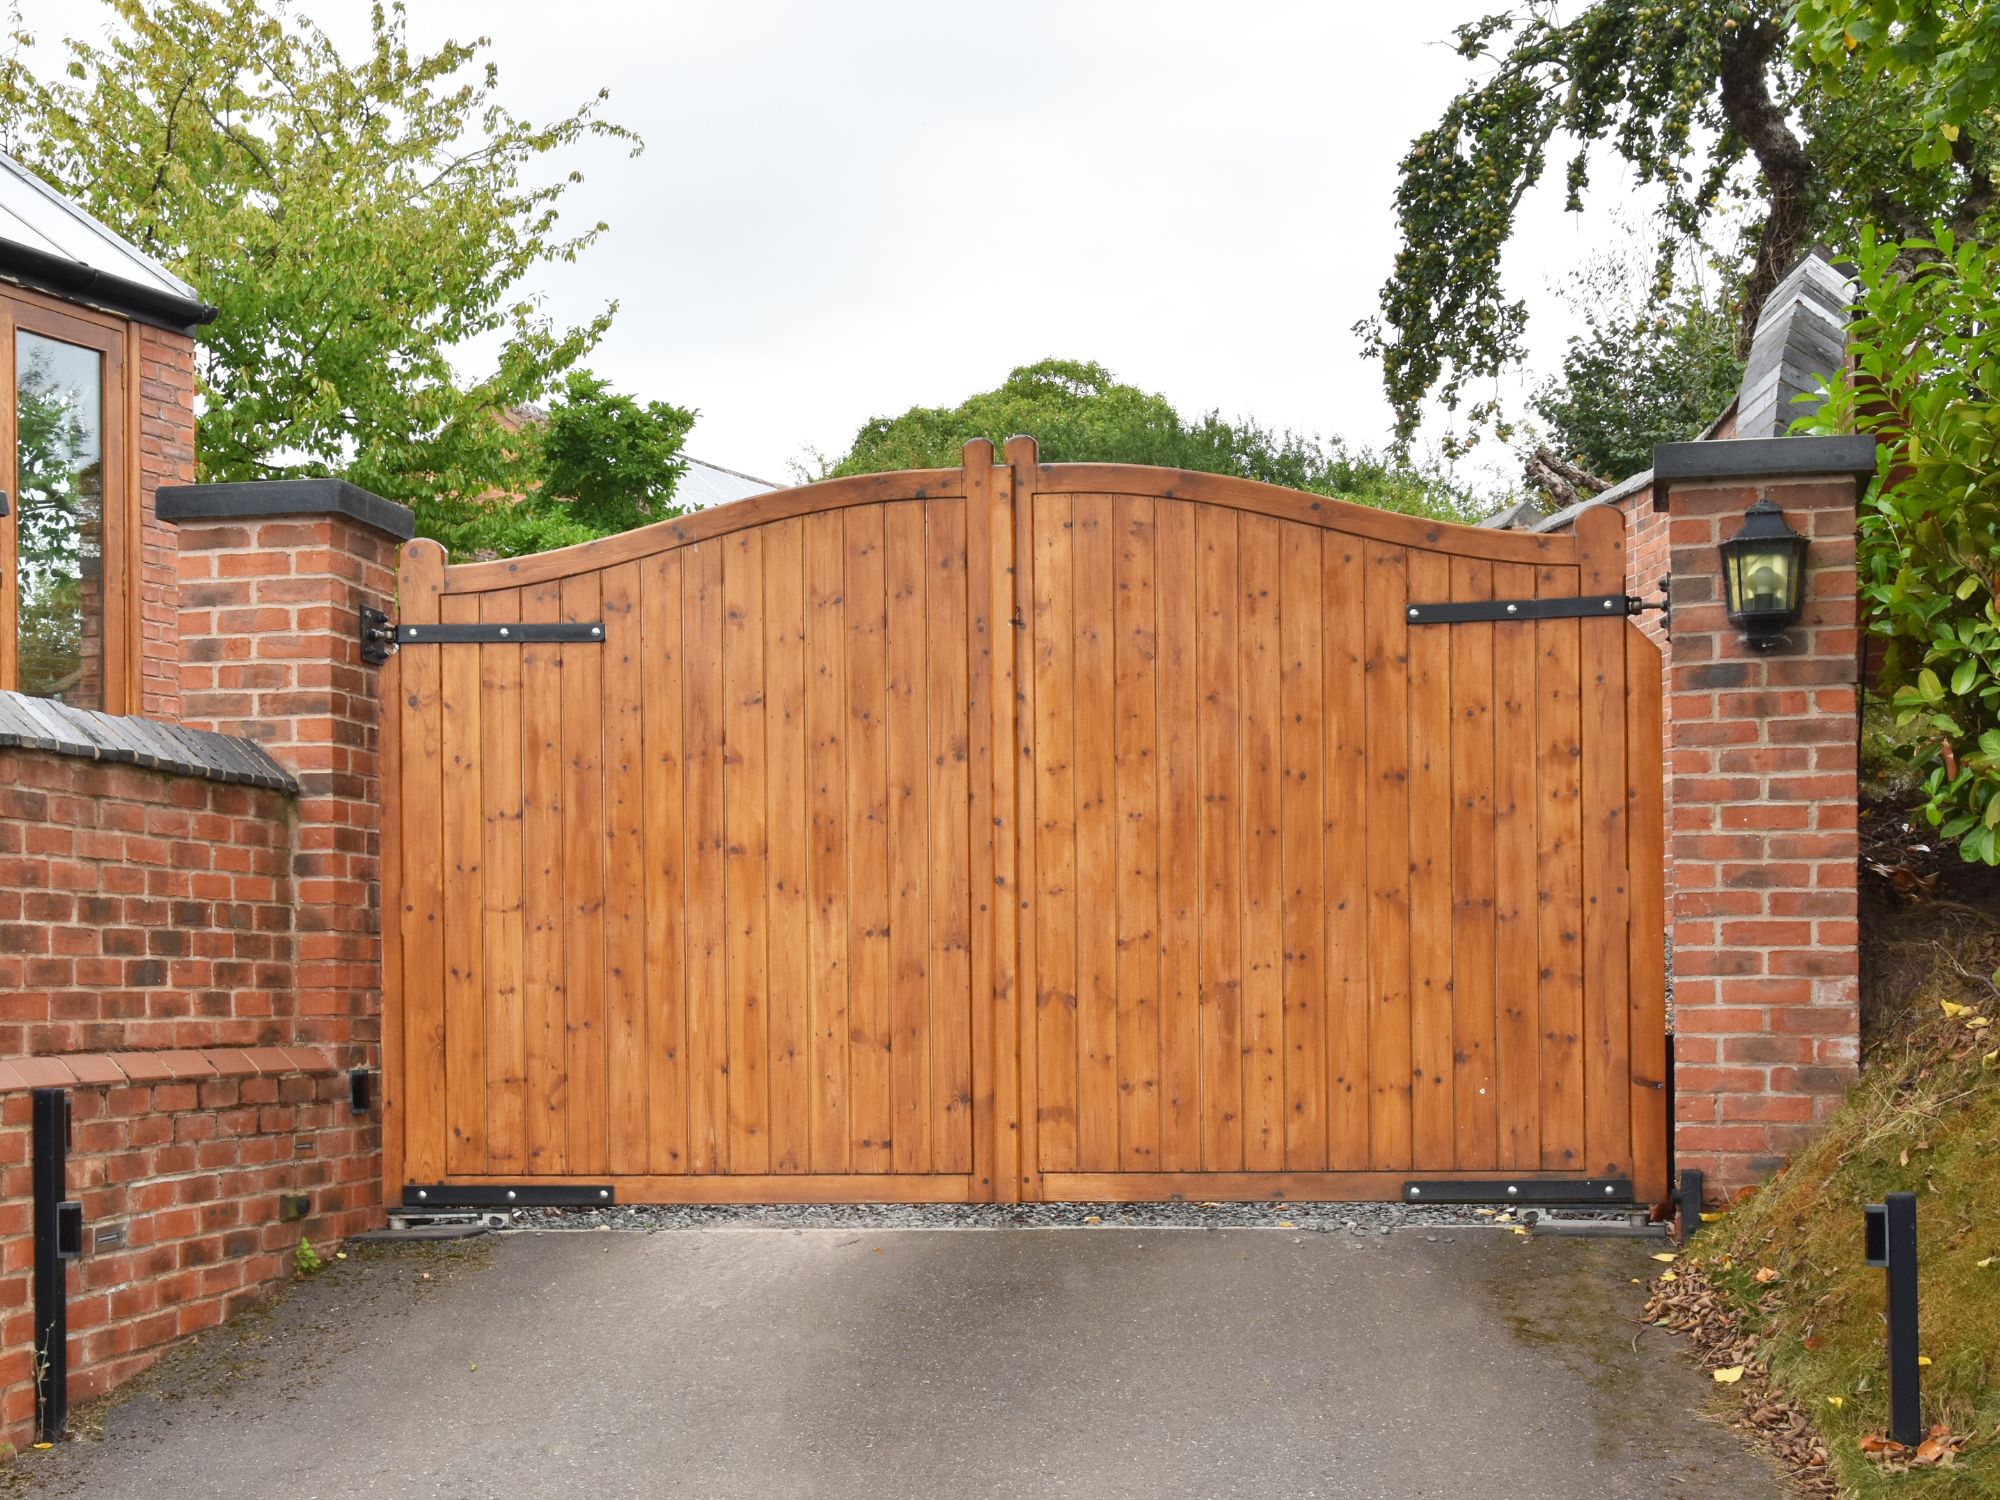 Large driveway entrance gates